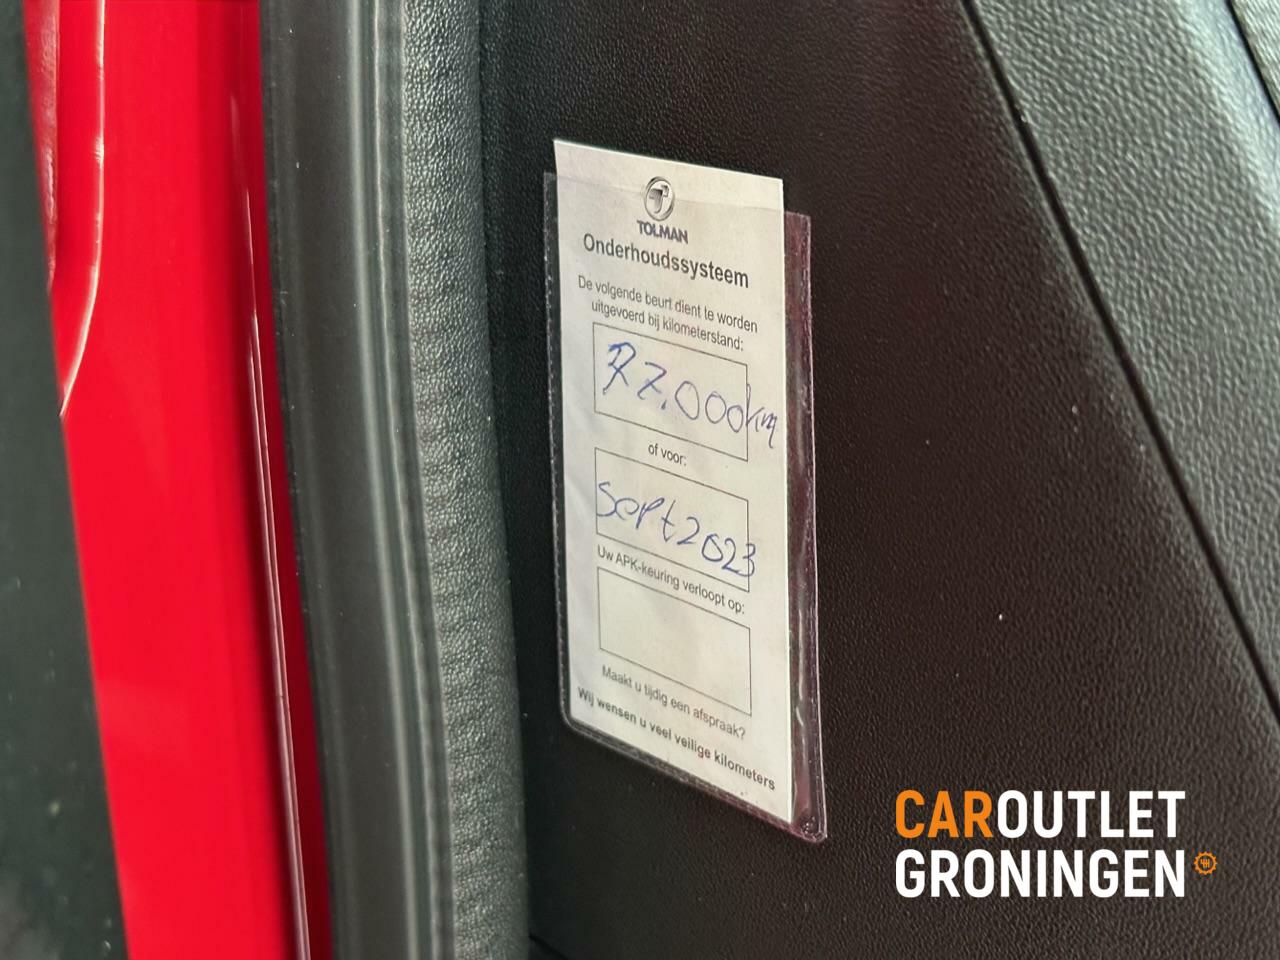 Caroutlet Groningen - Toyota Aygo 1.0 VVT-i | 5 DEURS | CRUISE | AIRCO | DEALER OH